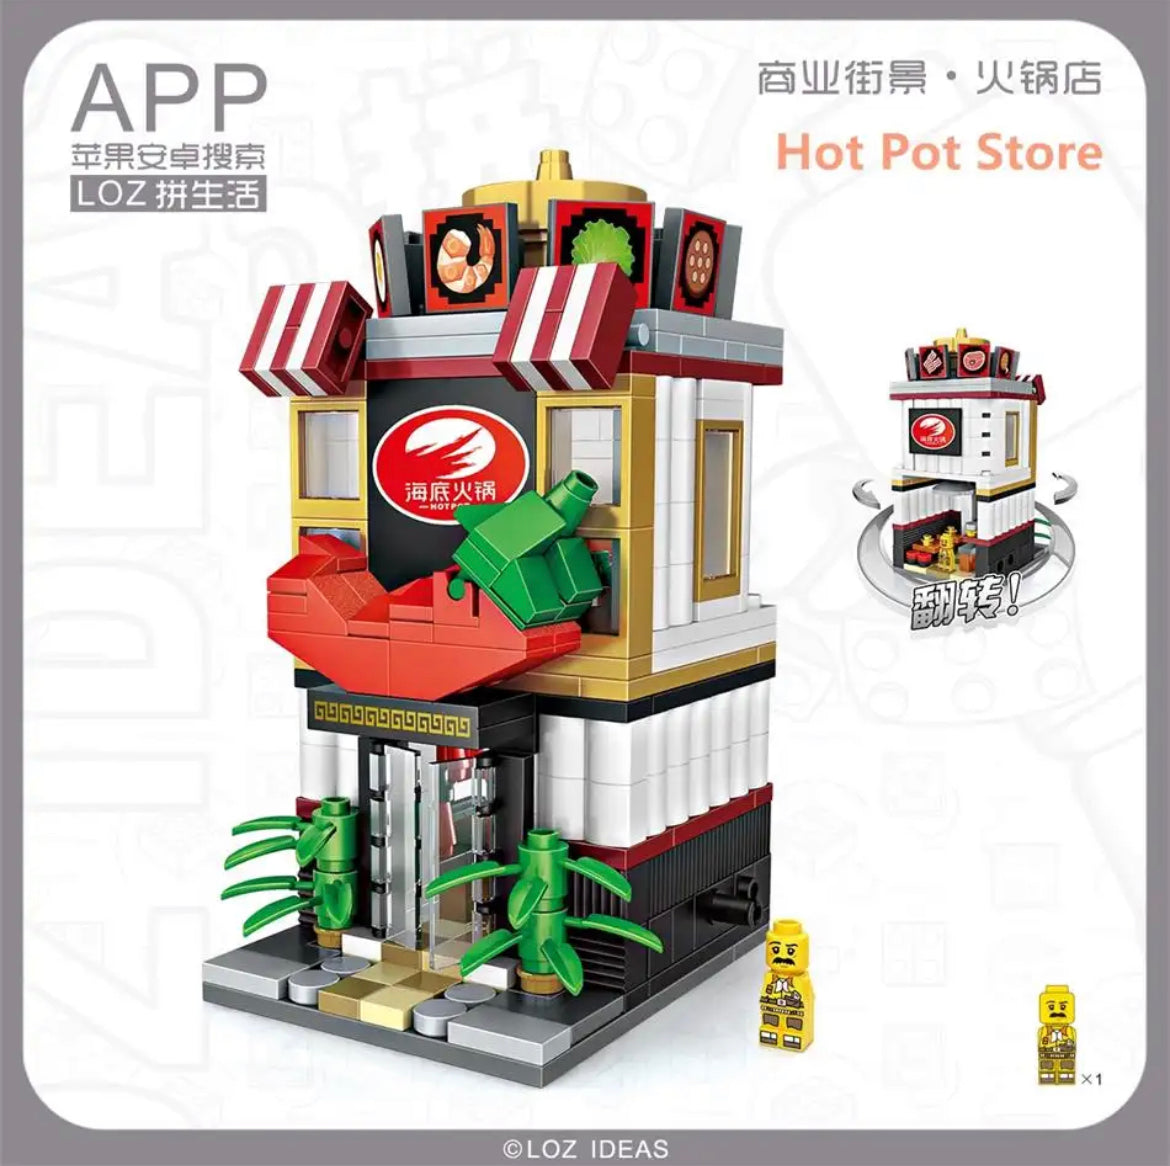 Japanese Chili Hotpot Shop Lego Puzzle